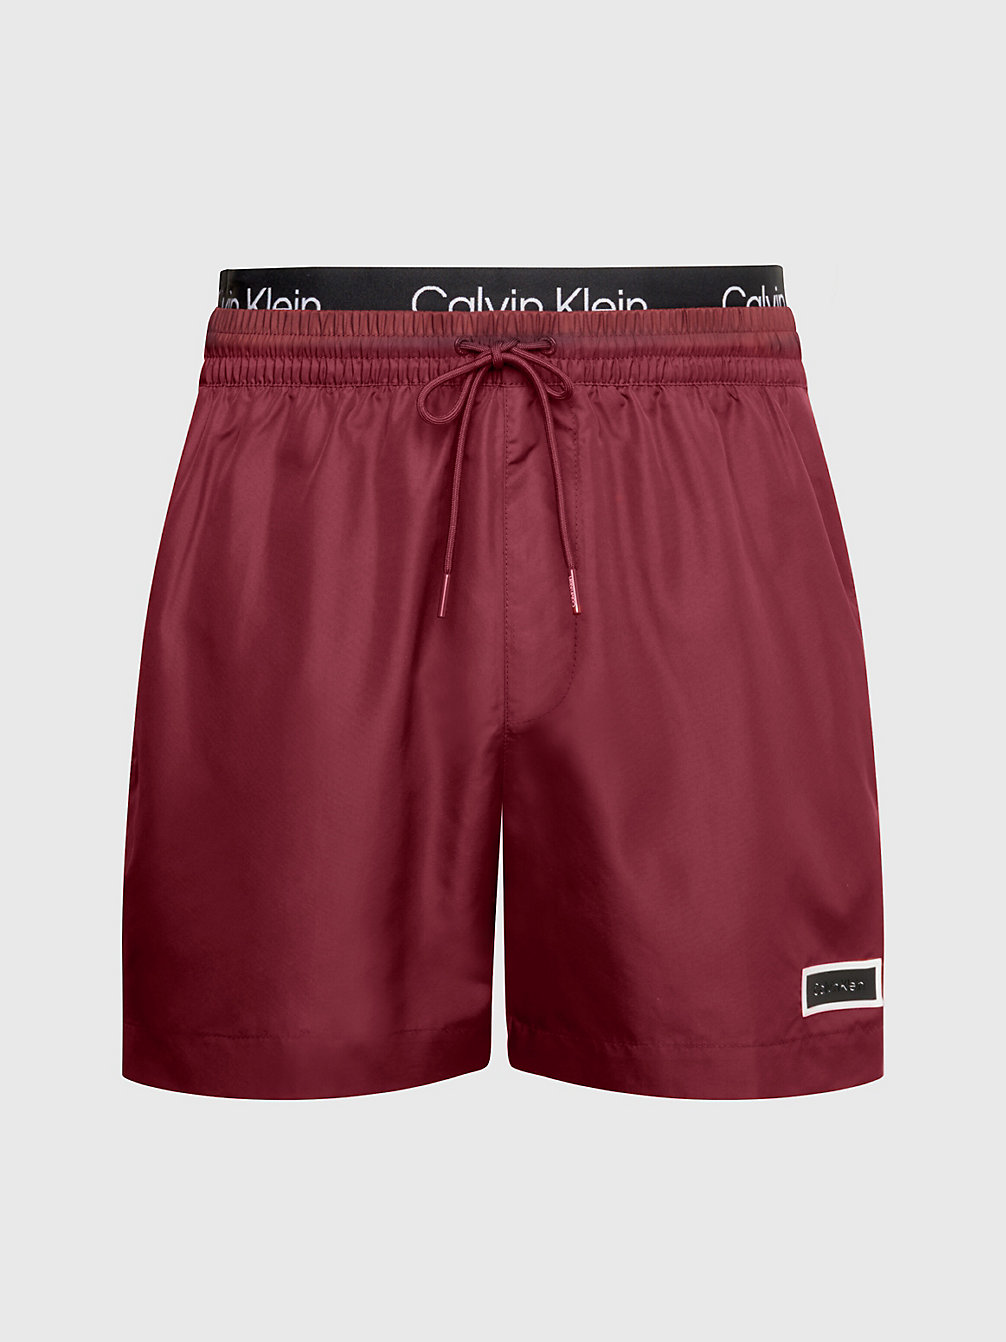 SIENNA BROWN Double Waistband Swim Shorts - Core Solids undefined men Calvin Klein